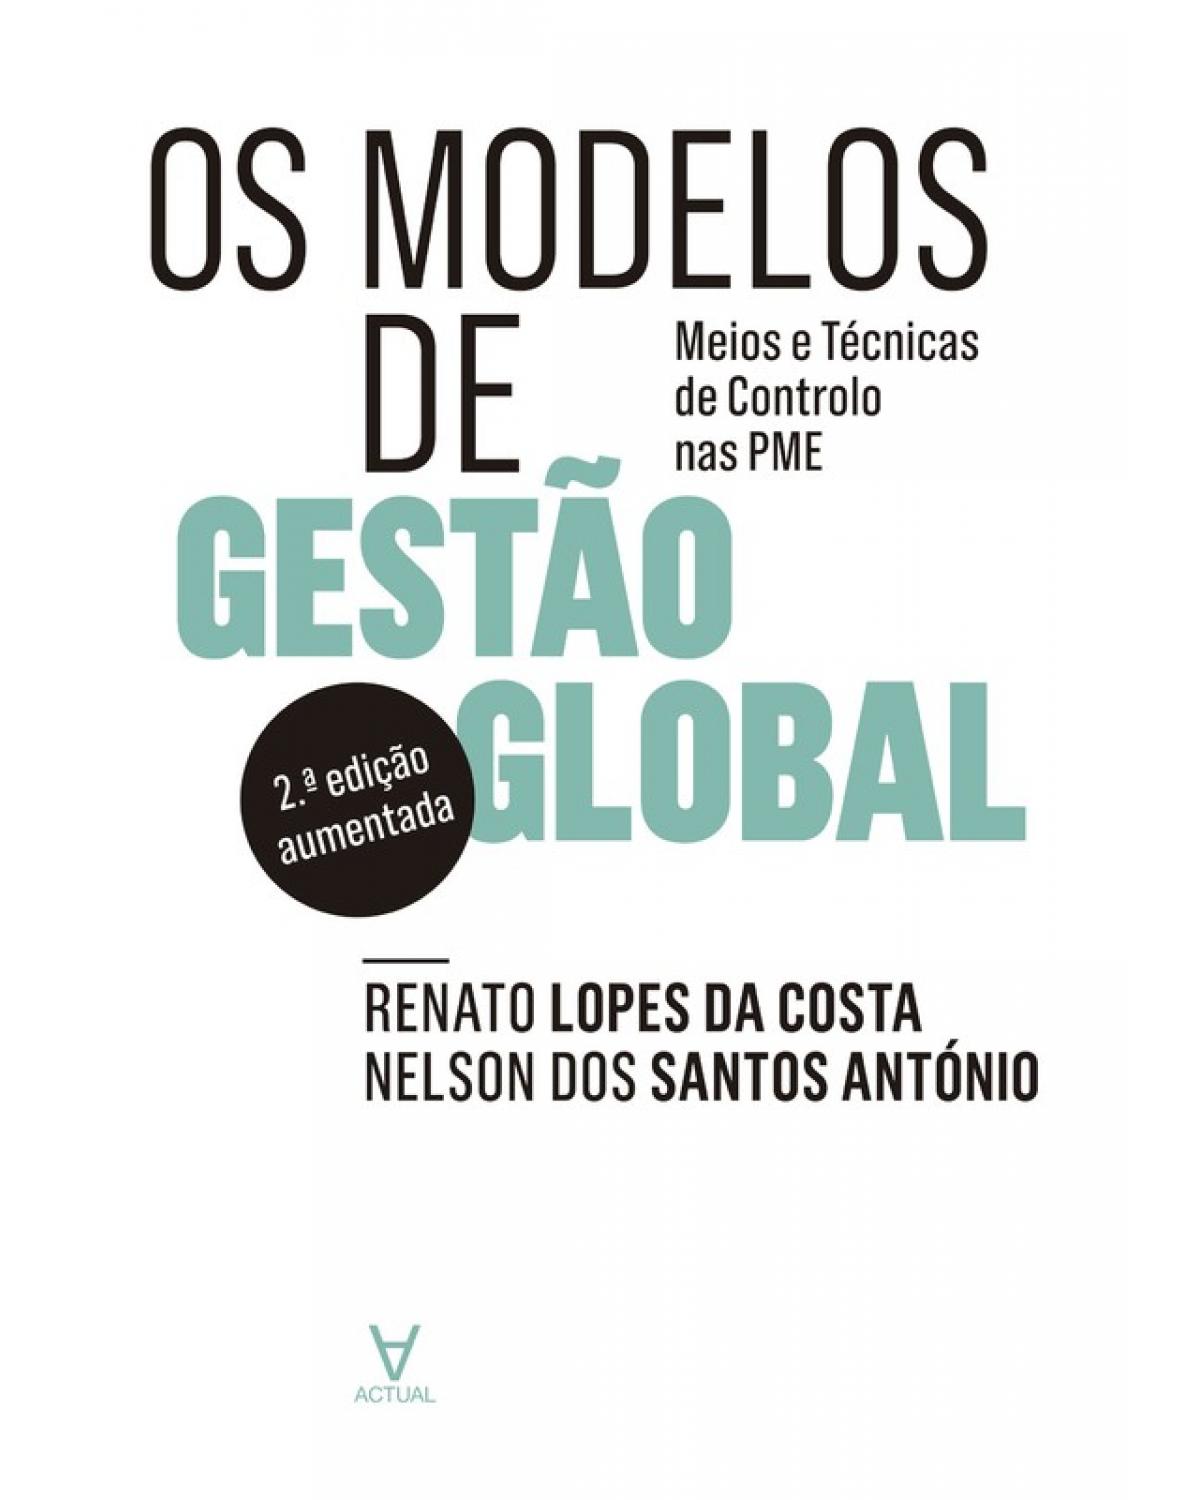 Os modelos de gestão global - meios e técnicas de controlo nas PME - 2ª Edição | 2015